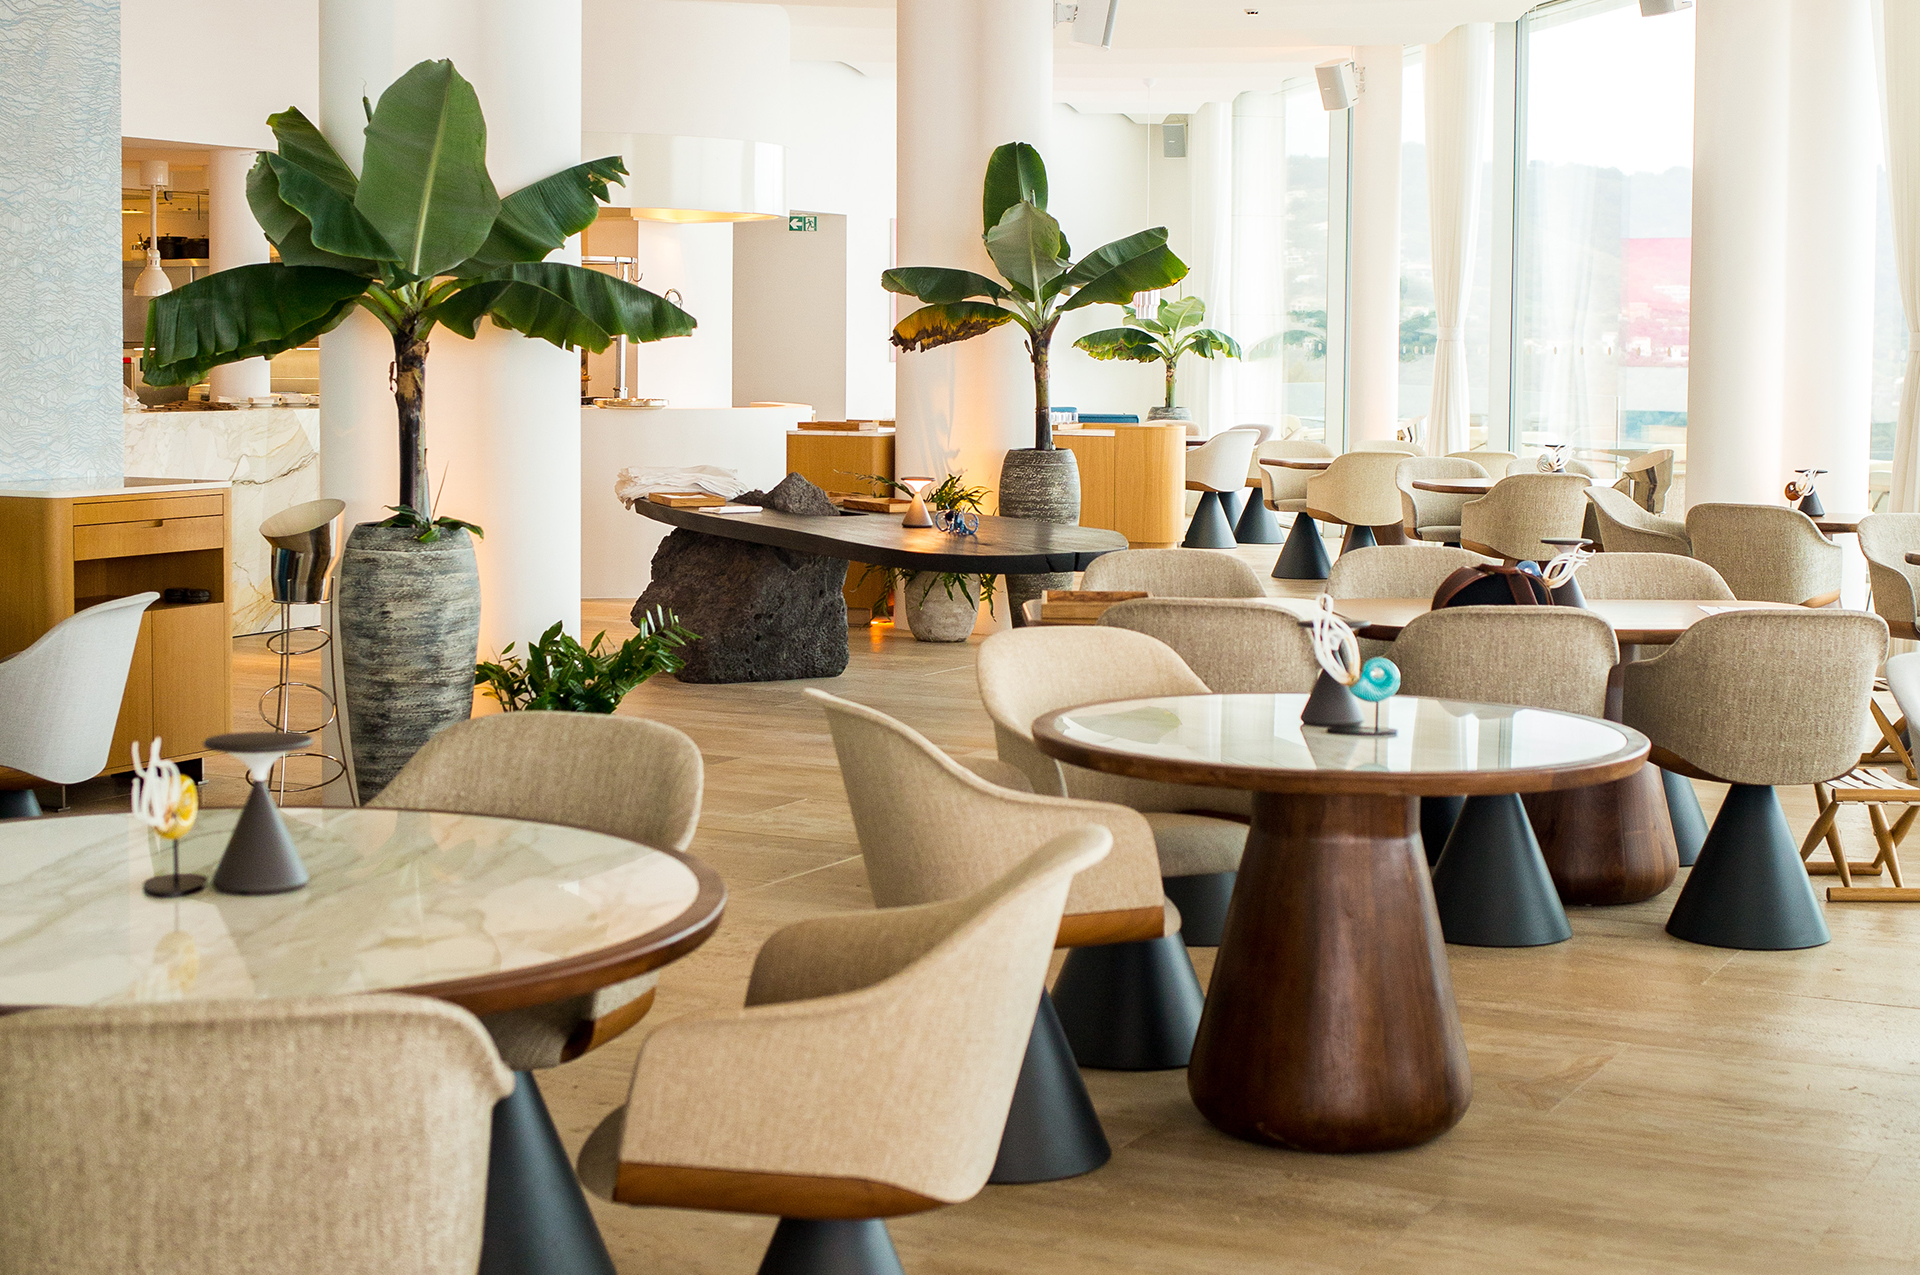 Bar Ceto au Maybourne Riviera - vue de l'intérieur du bar avec ses fauteuils, tables basses et plantes.